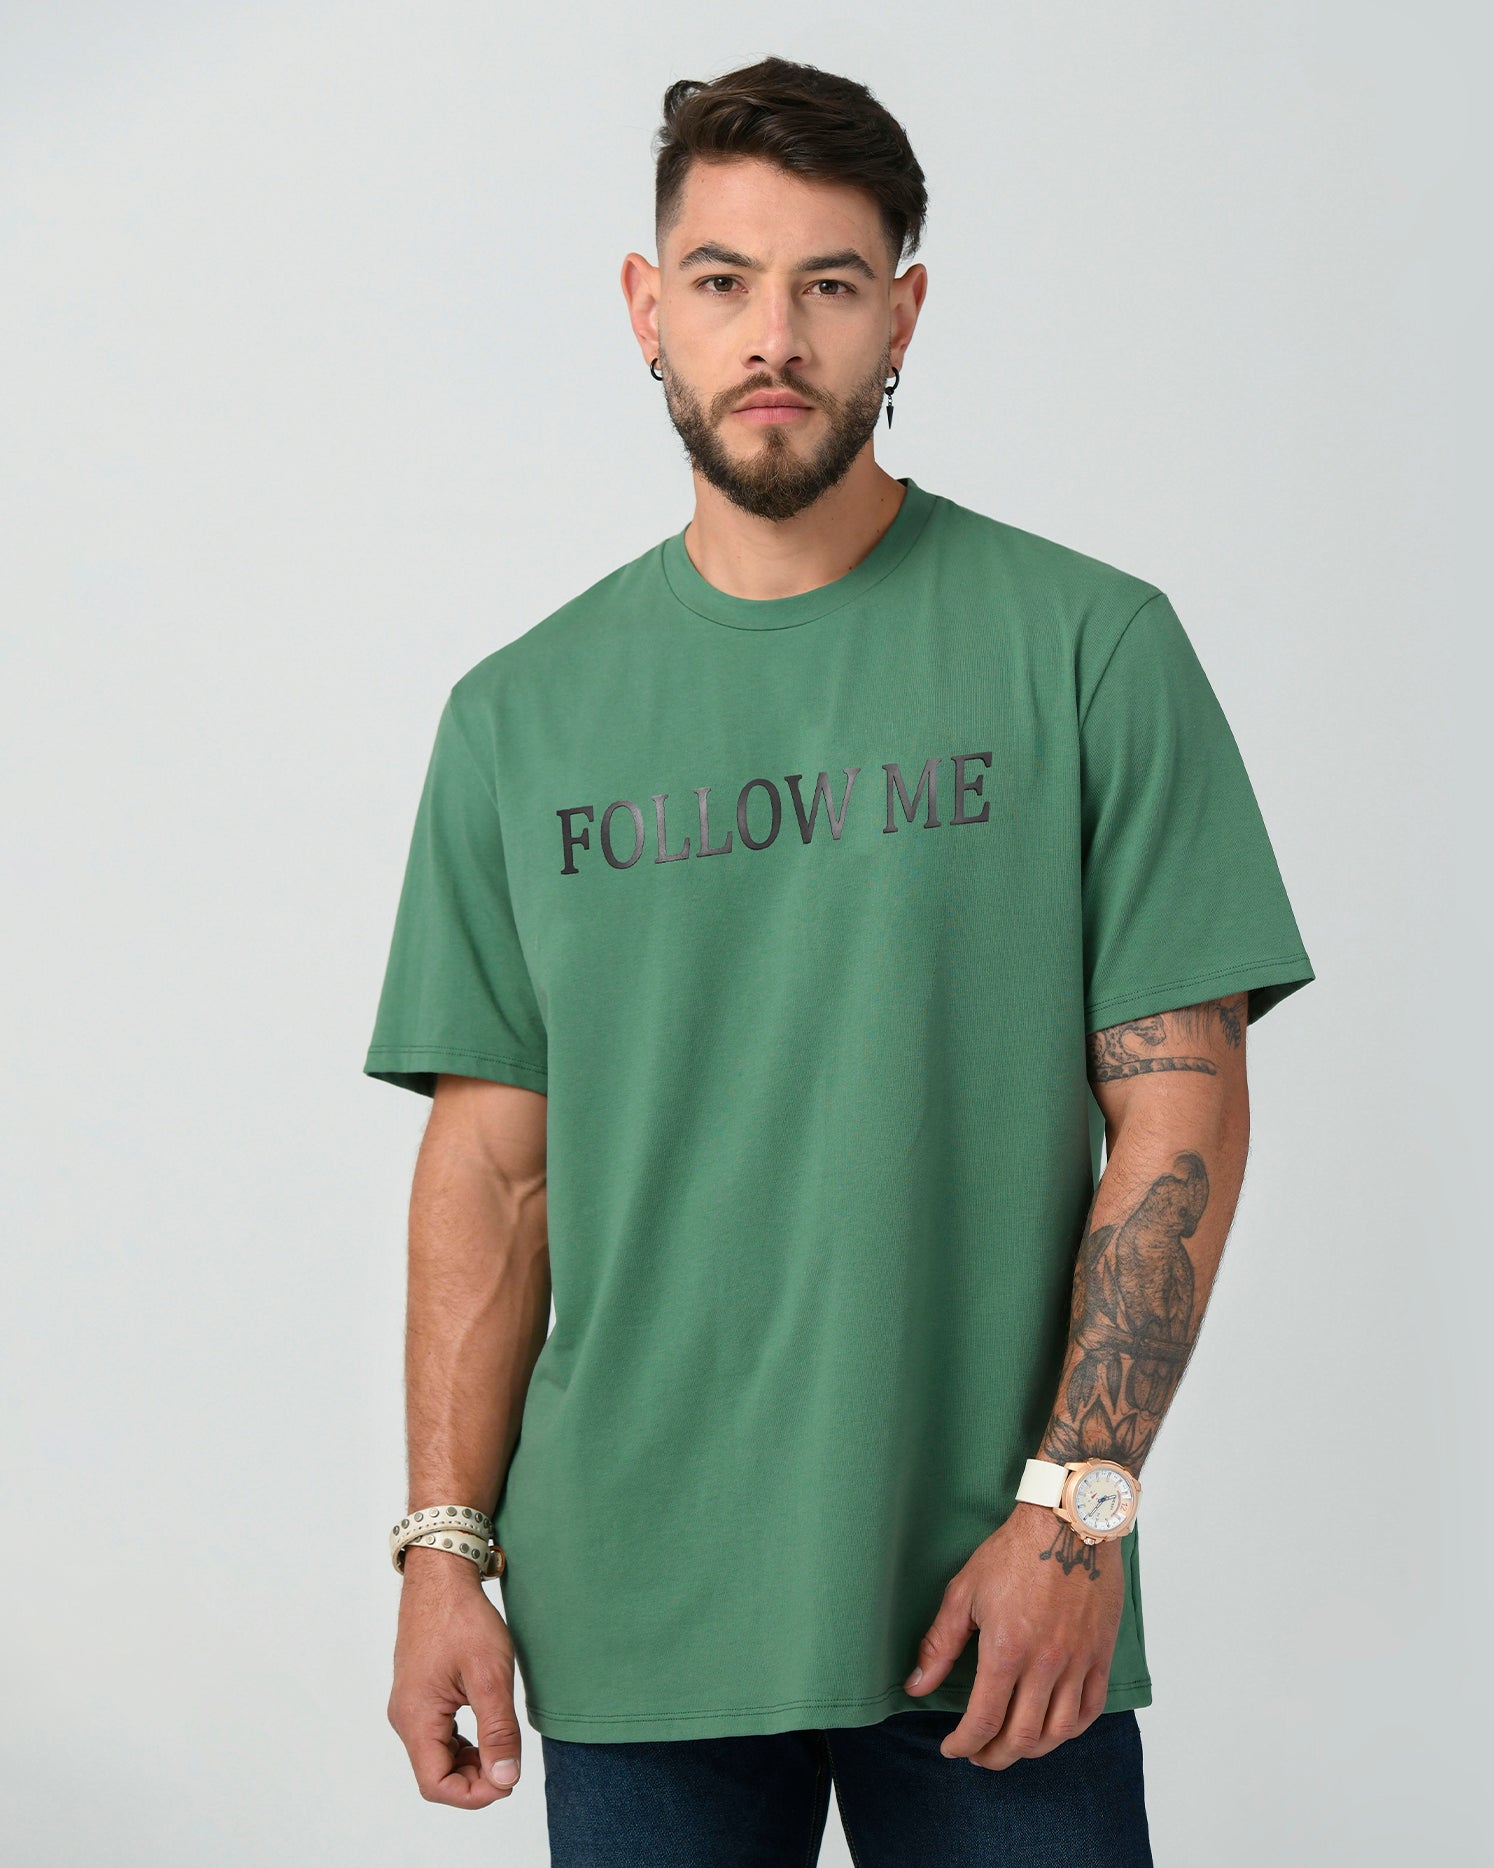 Camiseta clásica regular color verde oliva. Confeccionada en 97% Algodón y 3% Elastano, cuello redondo.  El modelo mide 1,75 mt y viste una talla S.